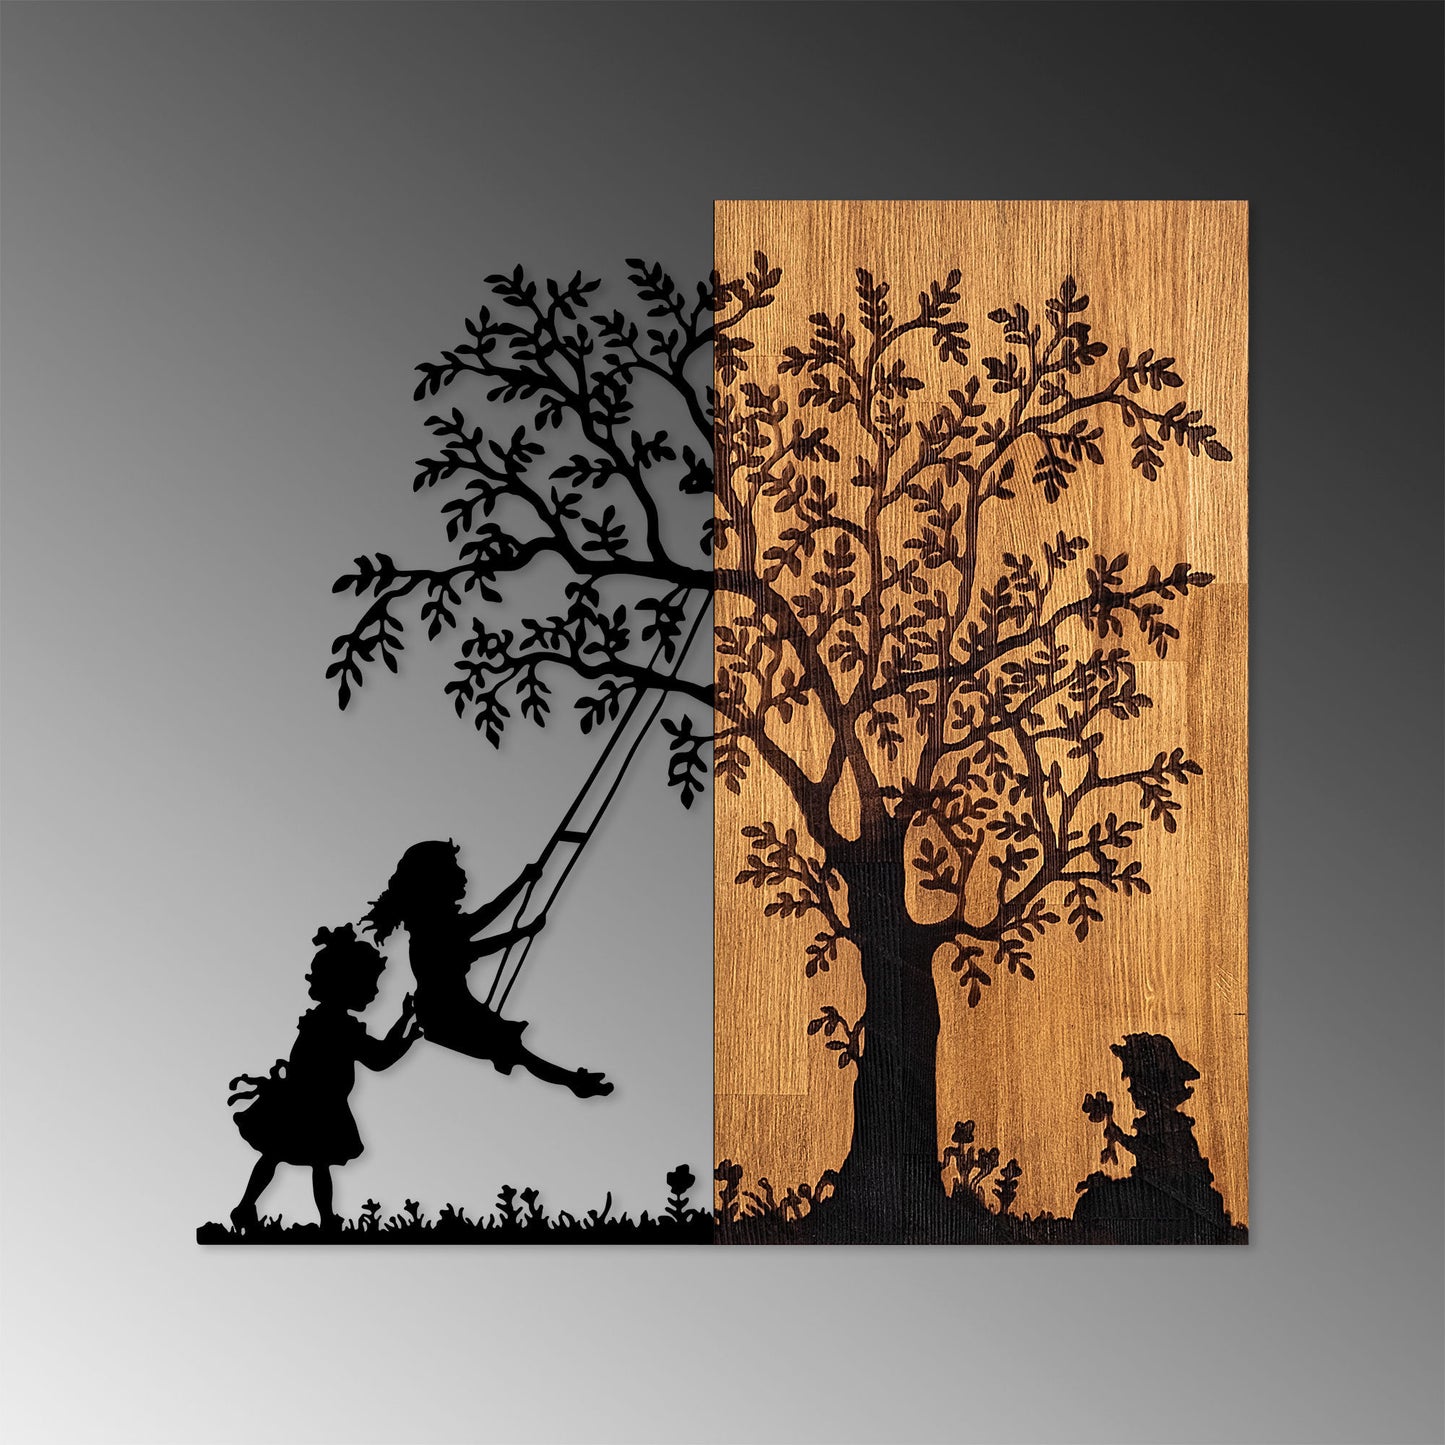 Træet og de rystende børn - dekorativt trævægstilbehør